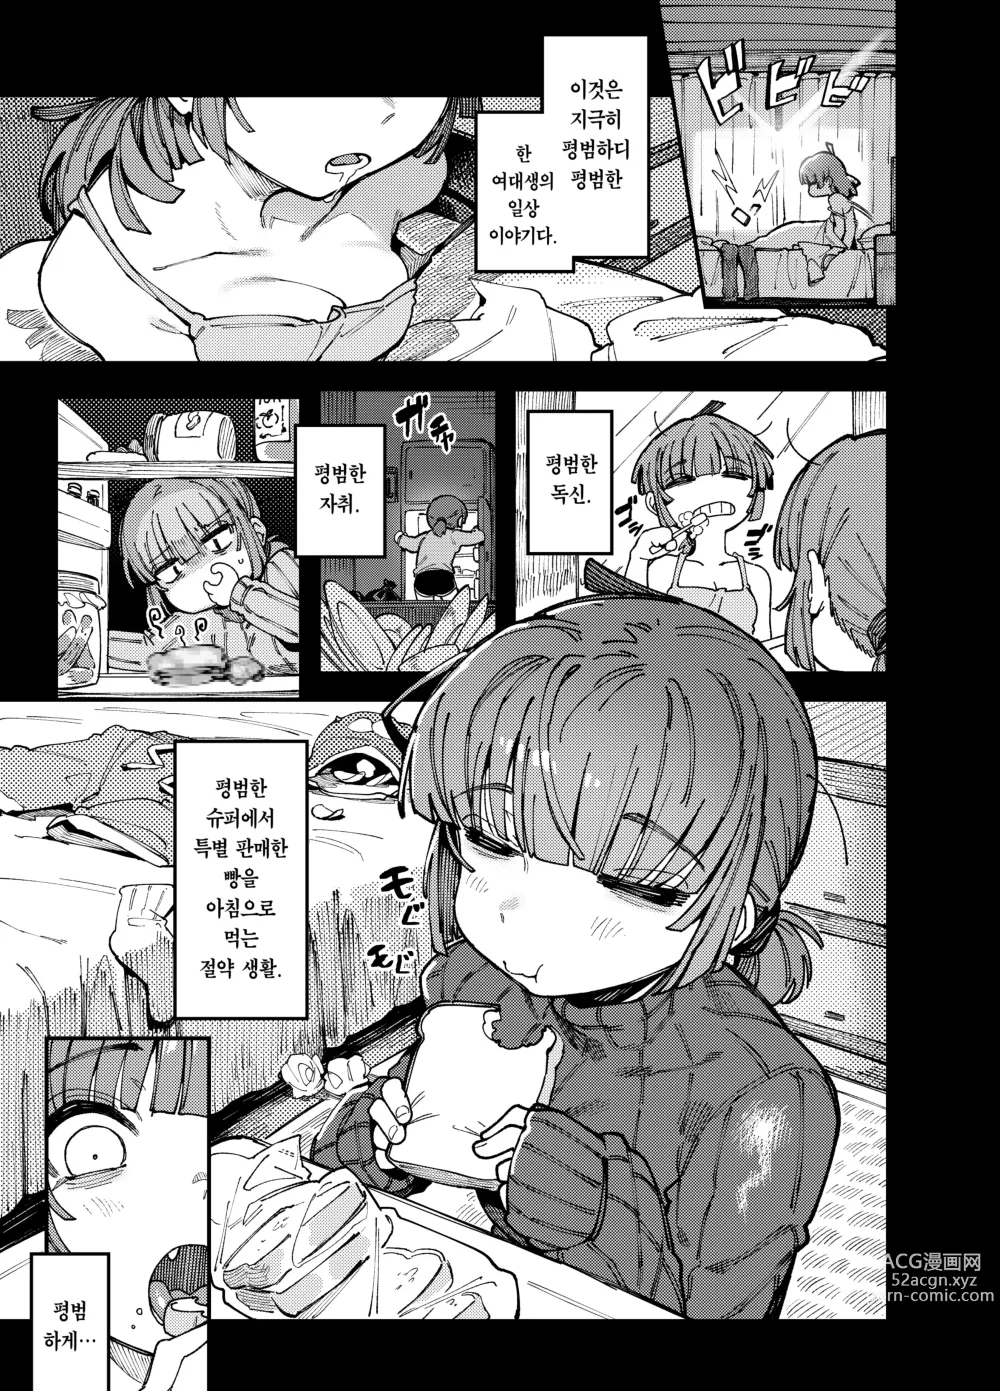 Page 3 of doujinshi 집이 너무 습해서 자란 환각을 유발하는 버섯을 잘못 먹고 발정이 나서 생긴 일들